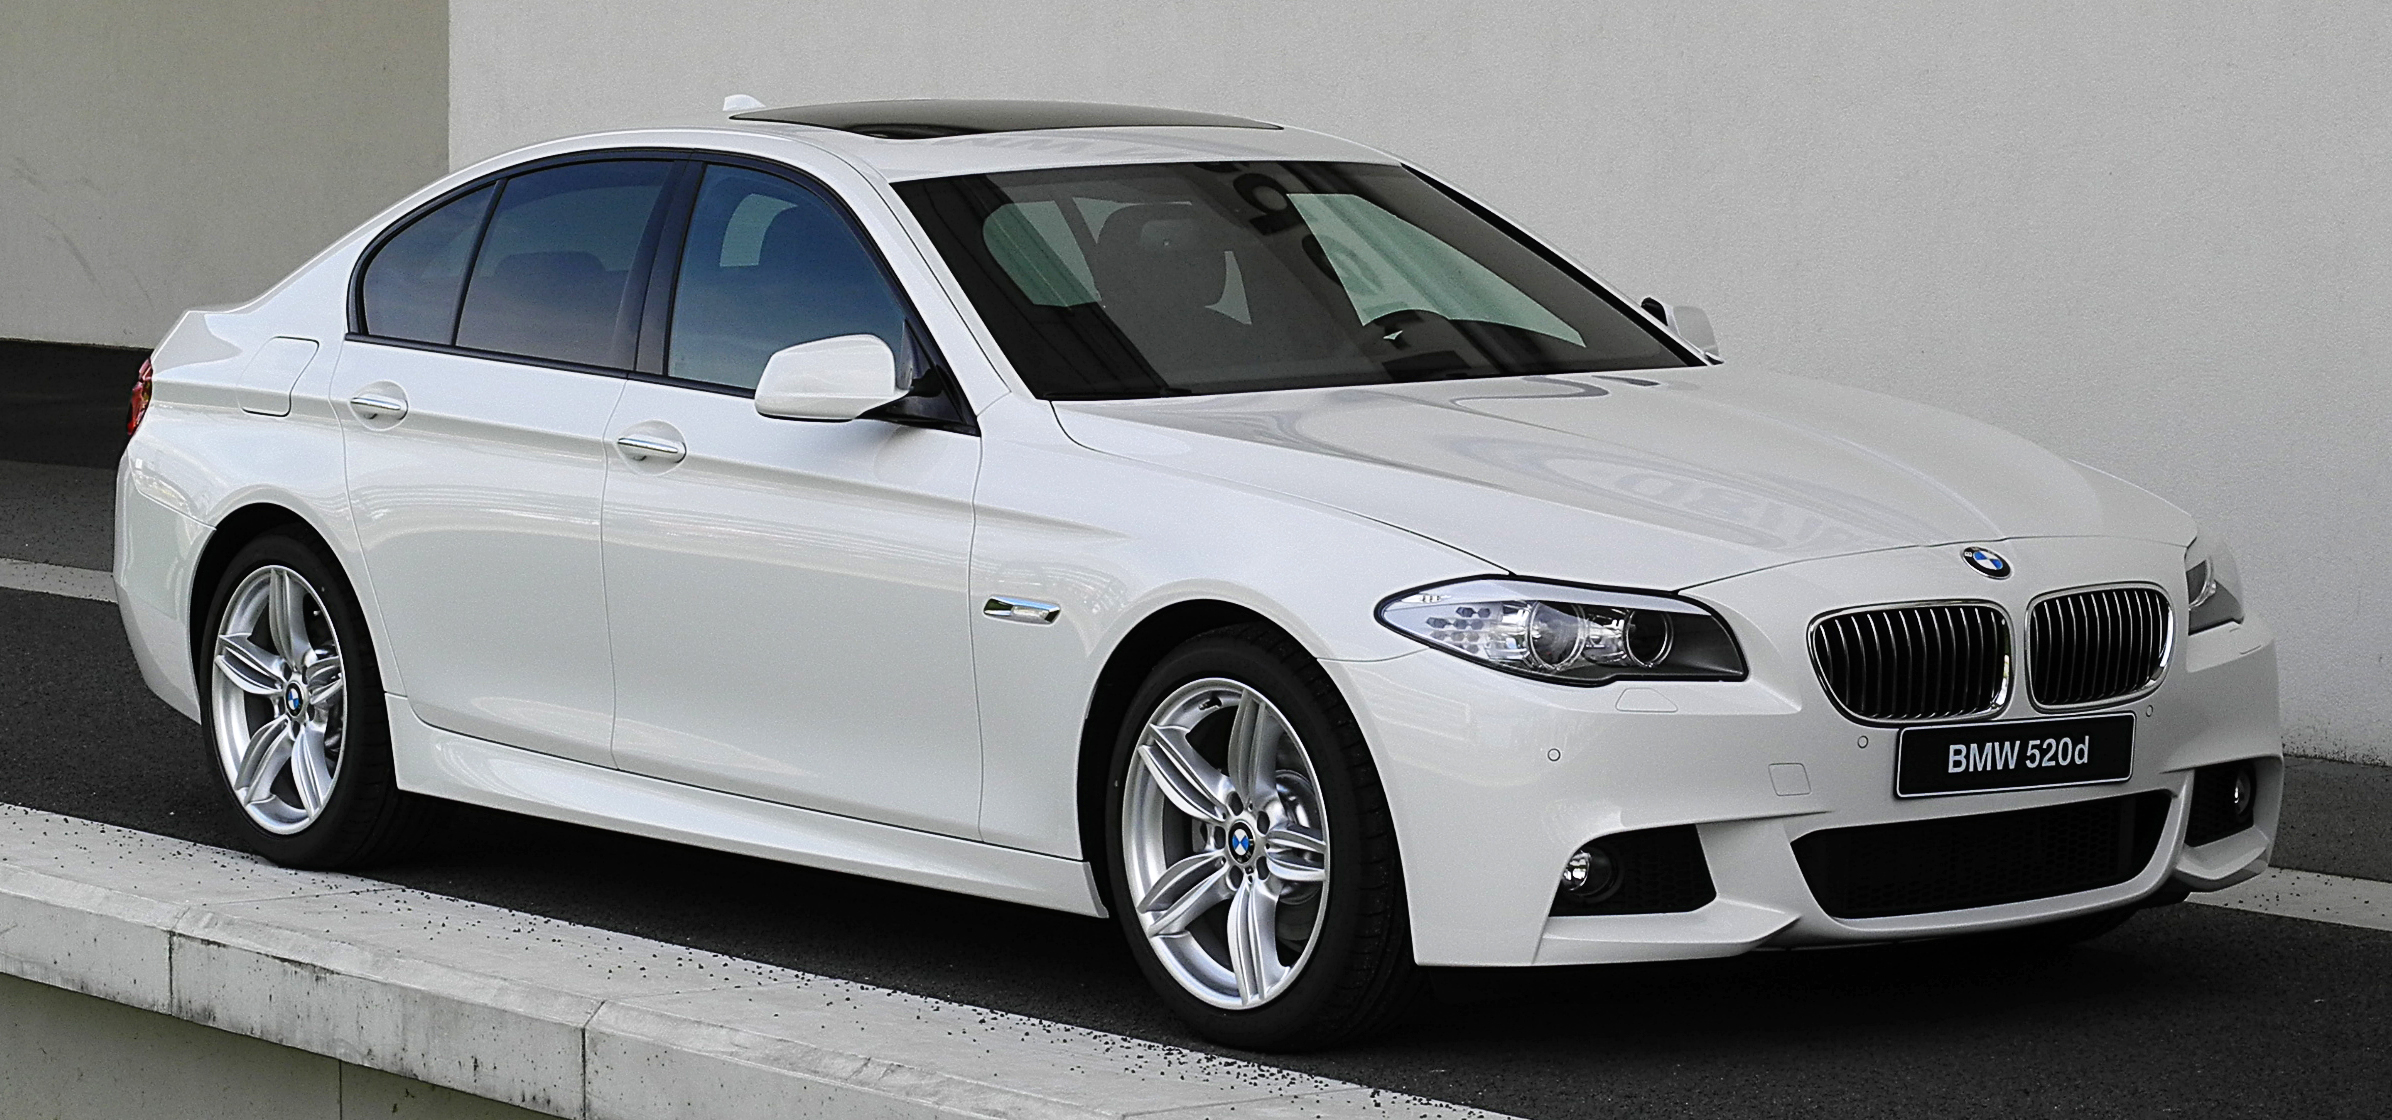 Doanh thu của BMW từ thị trường Trung Quốc chủ yếu đến từ những dòng xe sang trọng: BMW 5 series